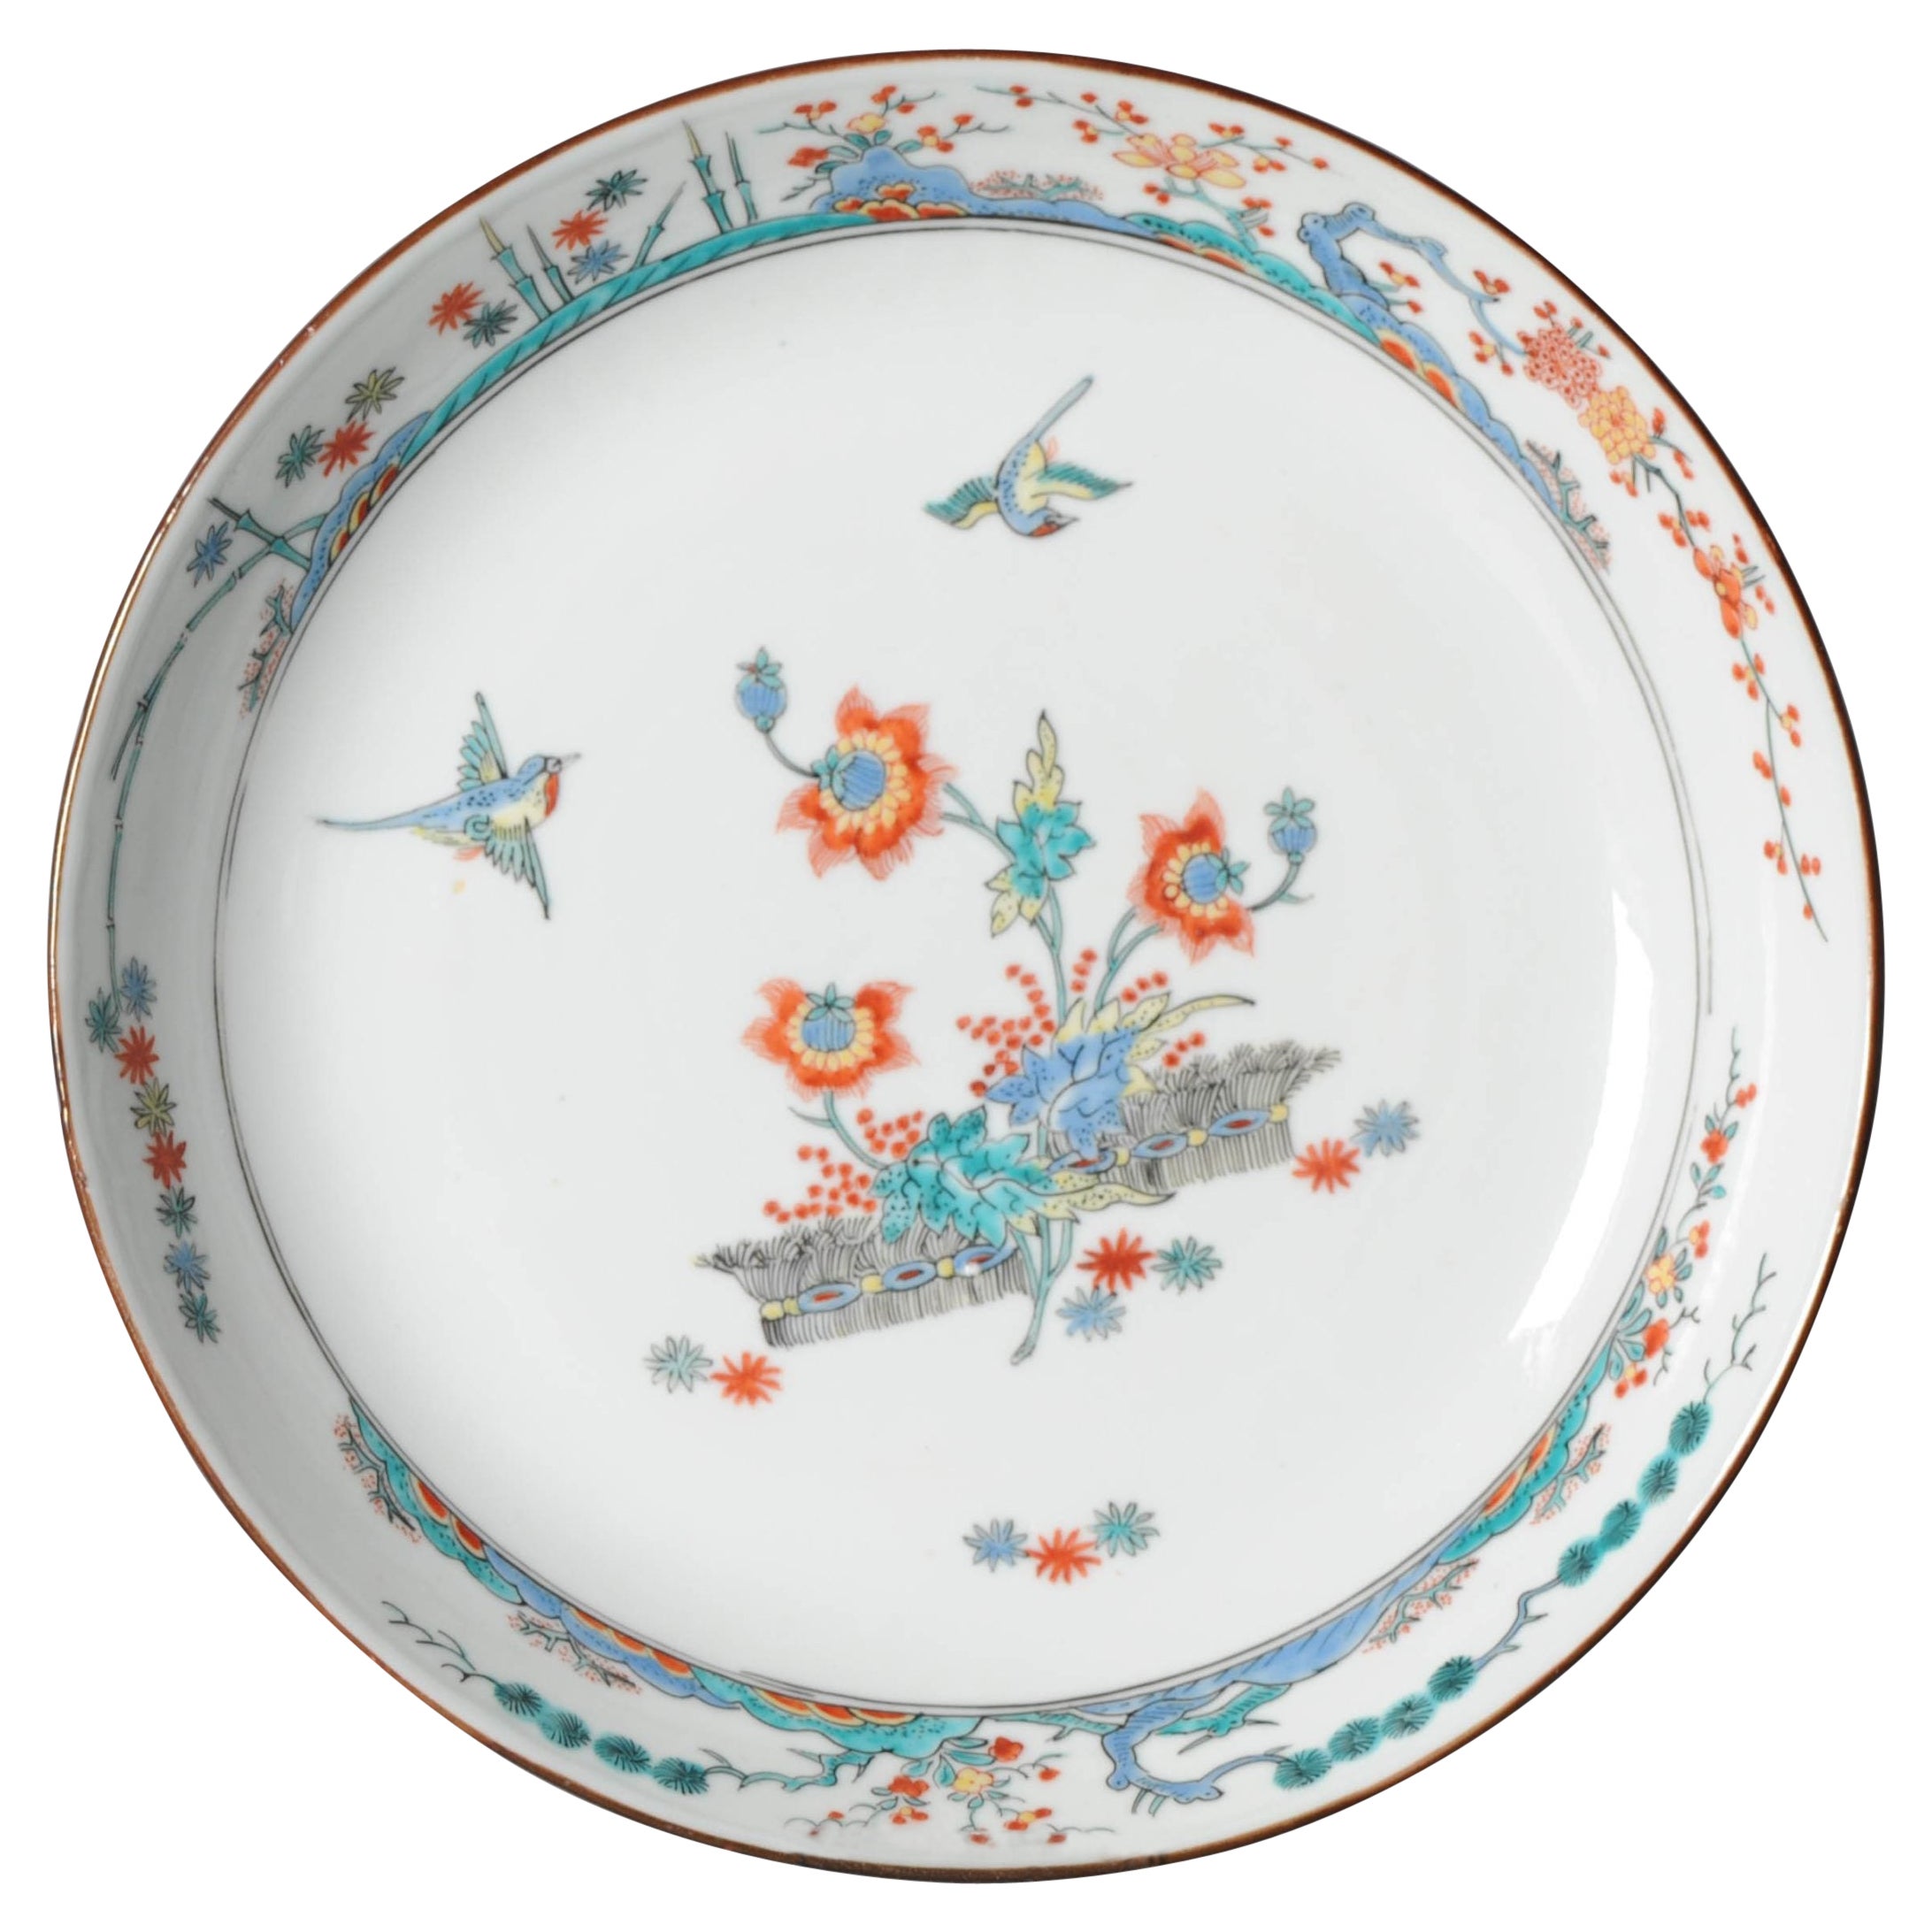 Assiette kakiemon en porcelaine chinoise de la période Kangxi, décorée en hollandais, 18ème siècle